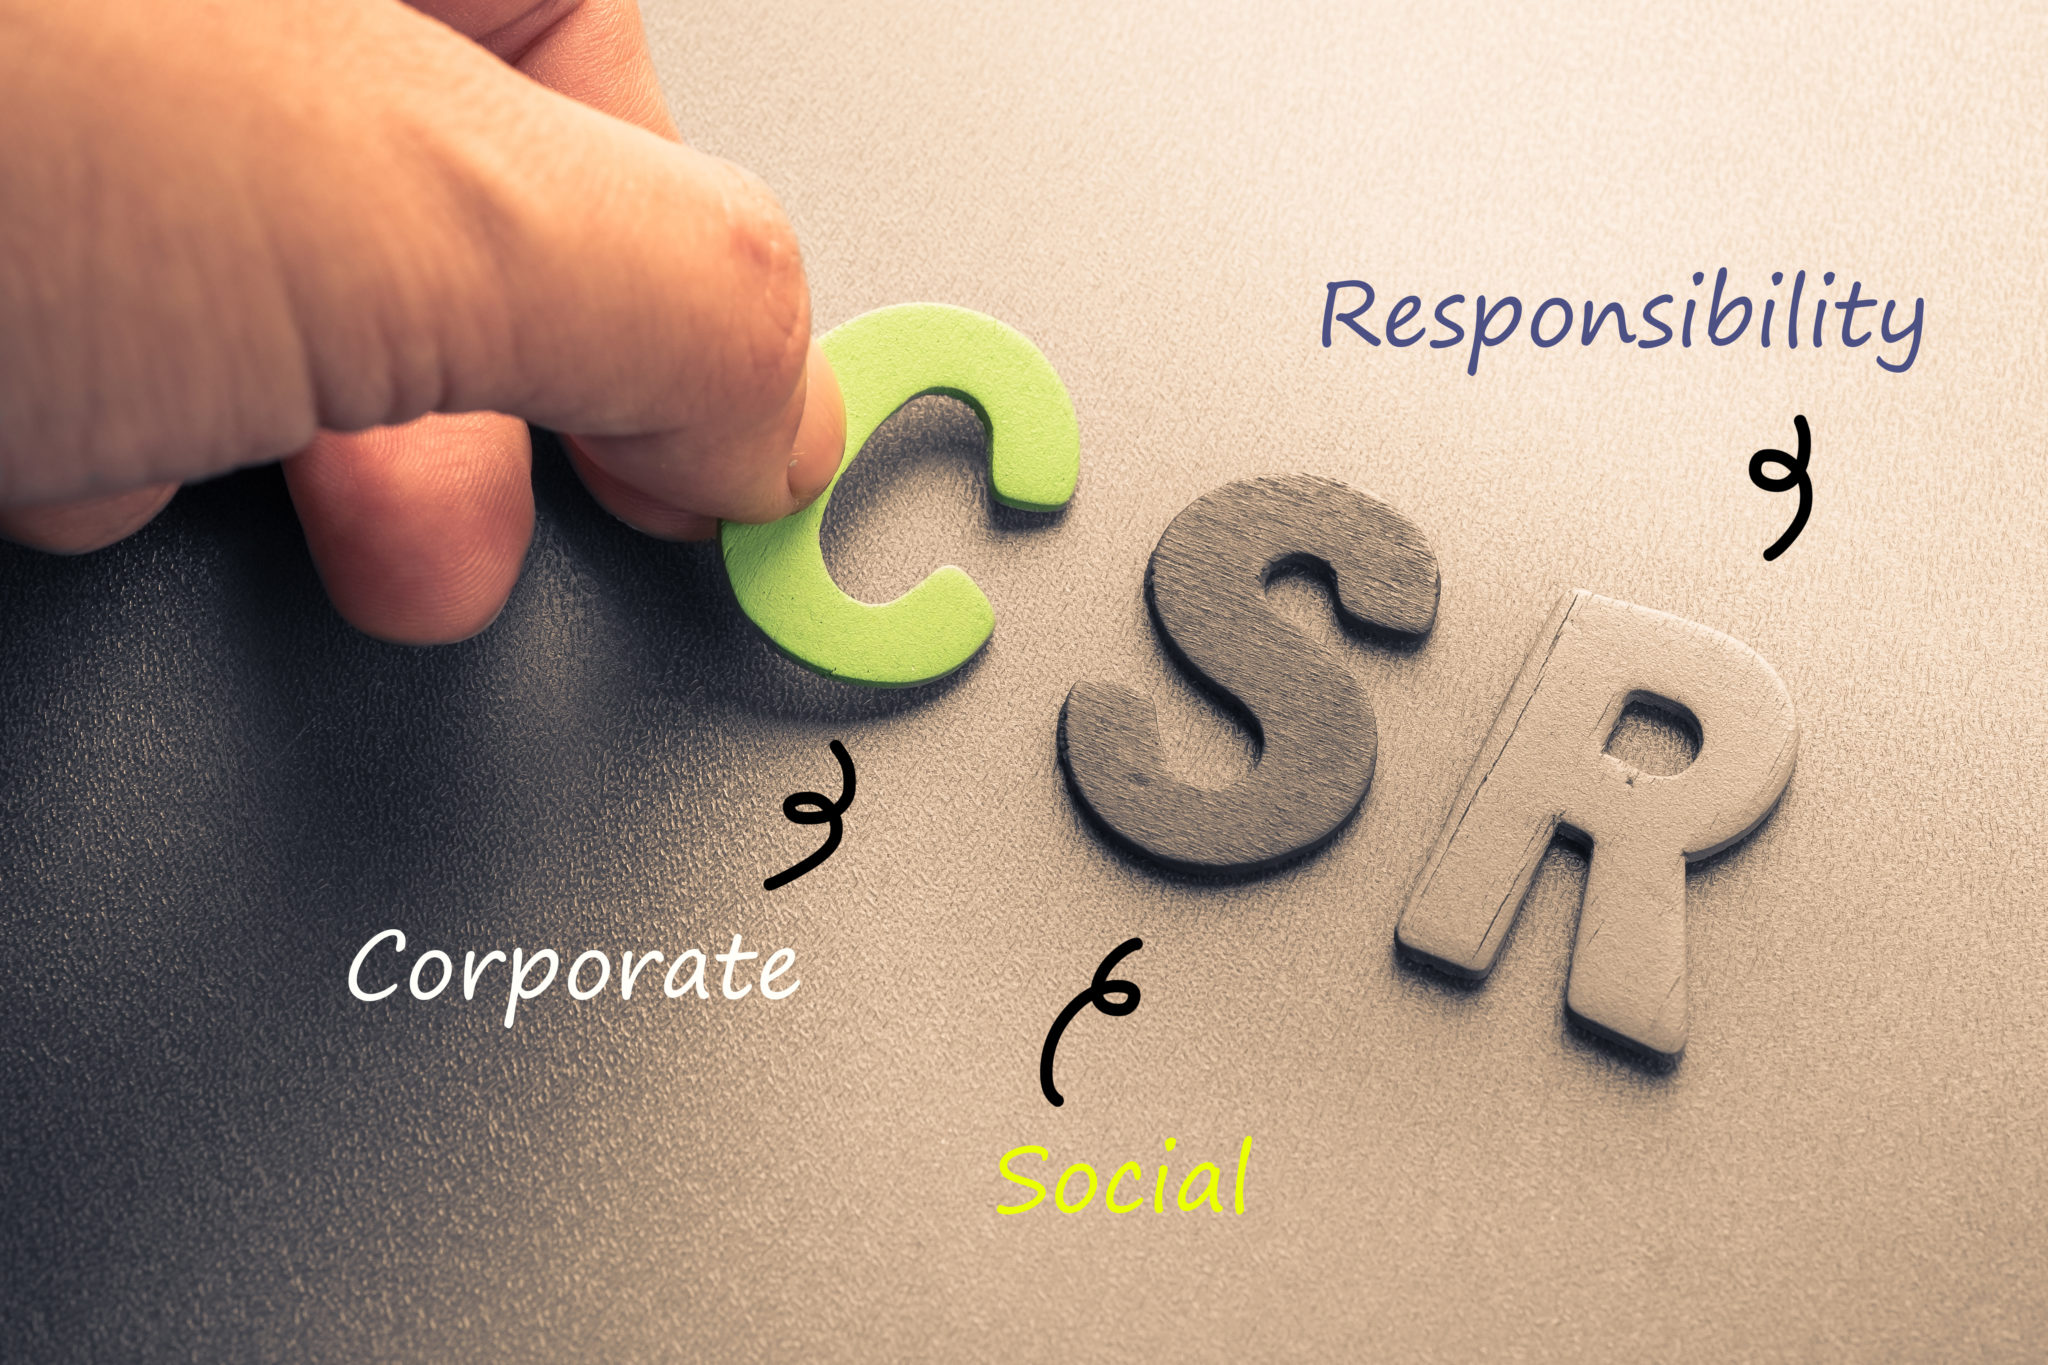 Corporats Social Responsibility